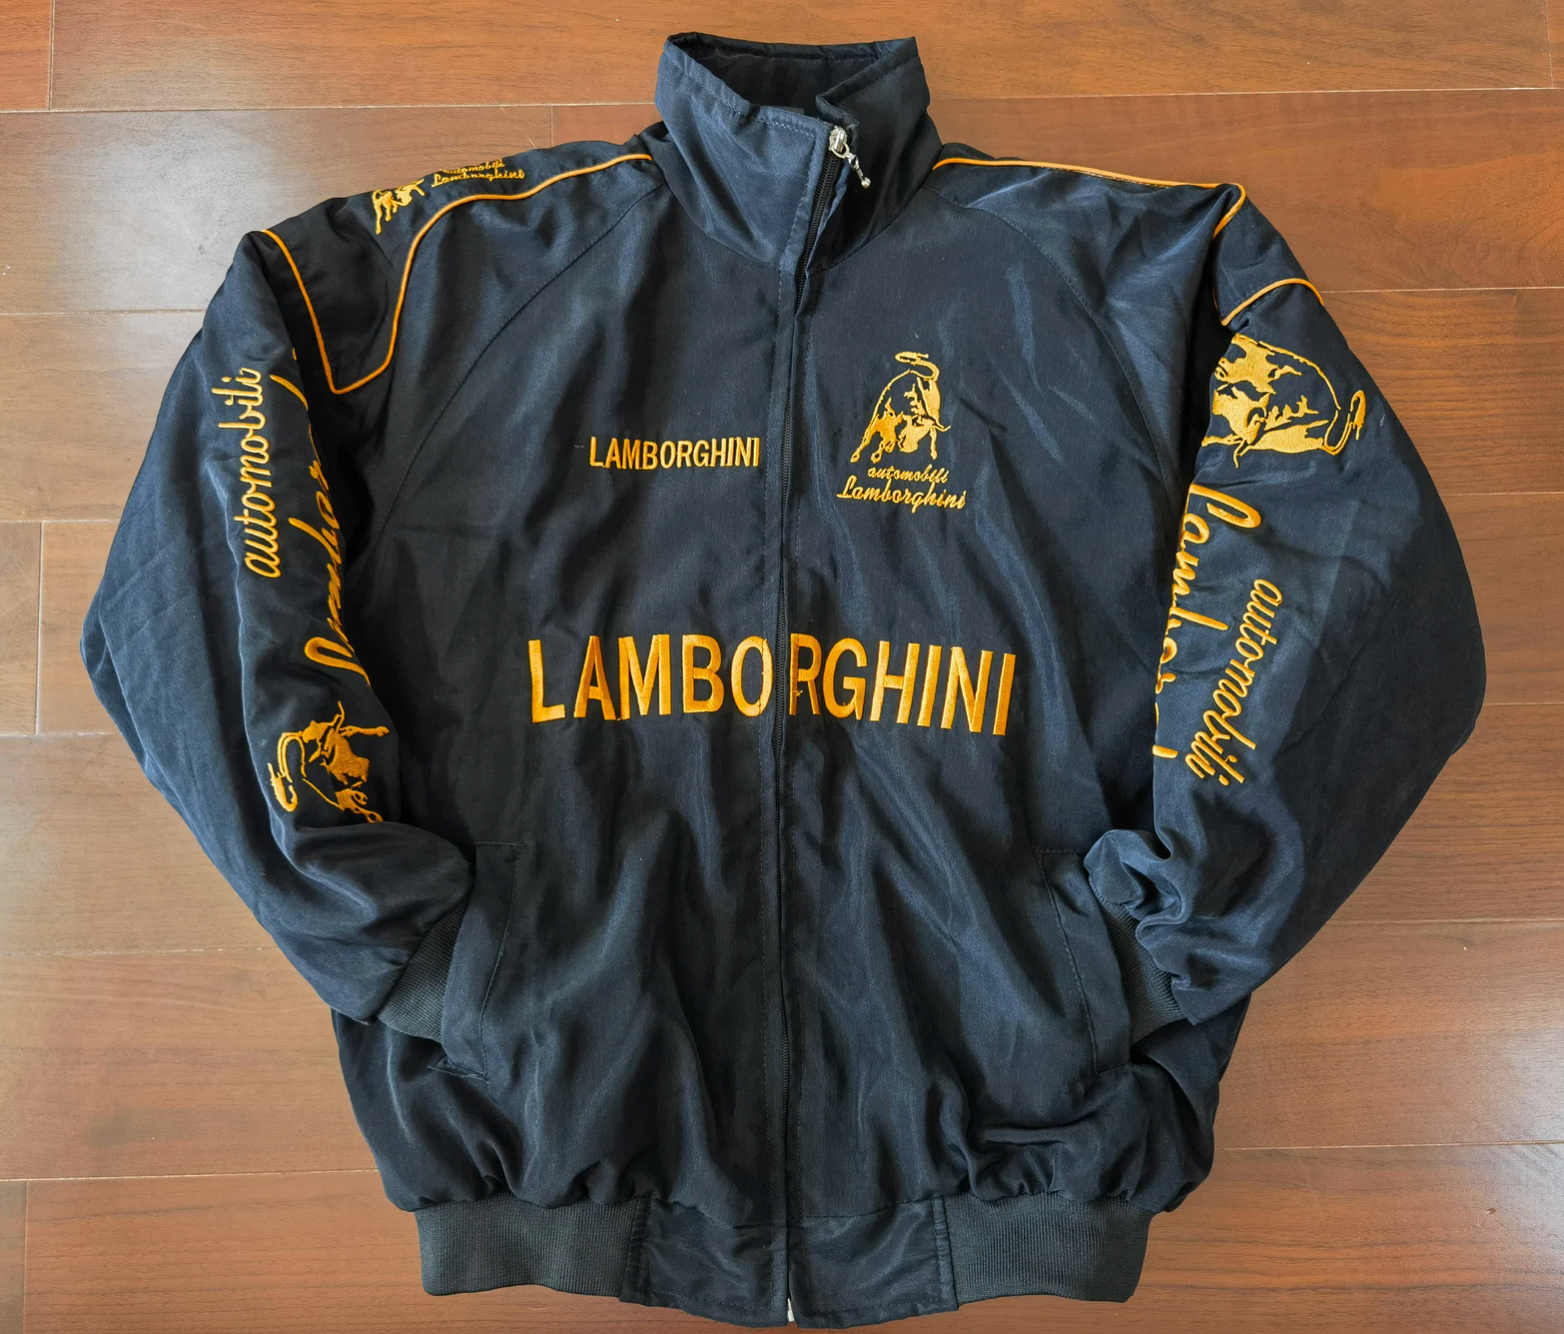 Lamborghini - Racing Jacket